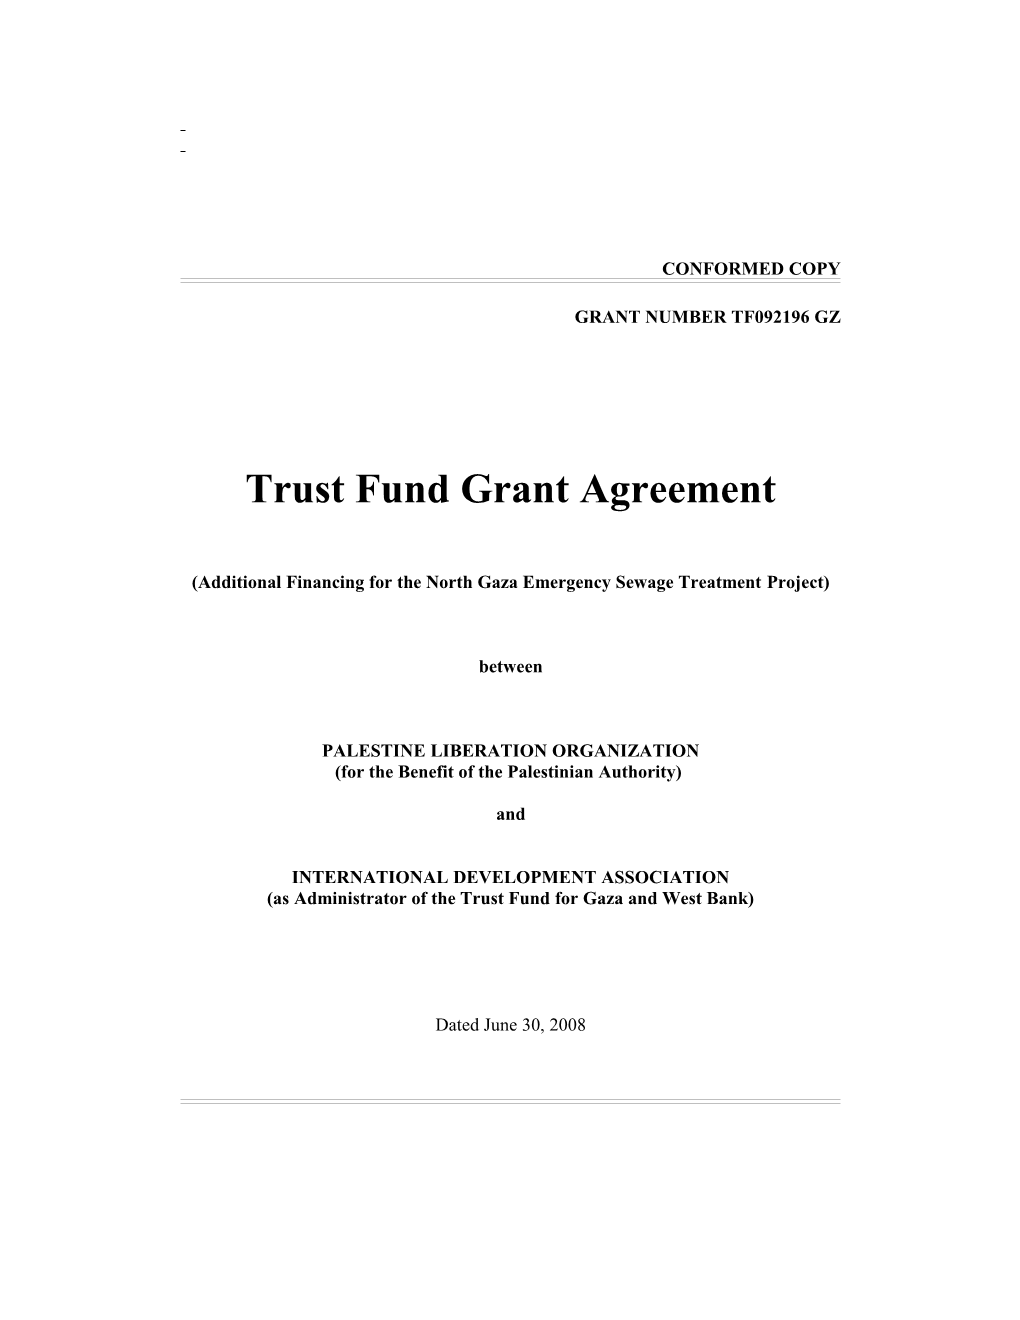 Trust Fund Grant Agreement